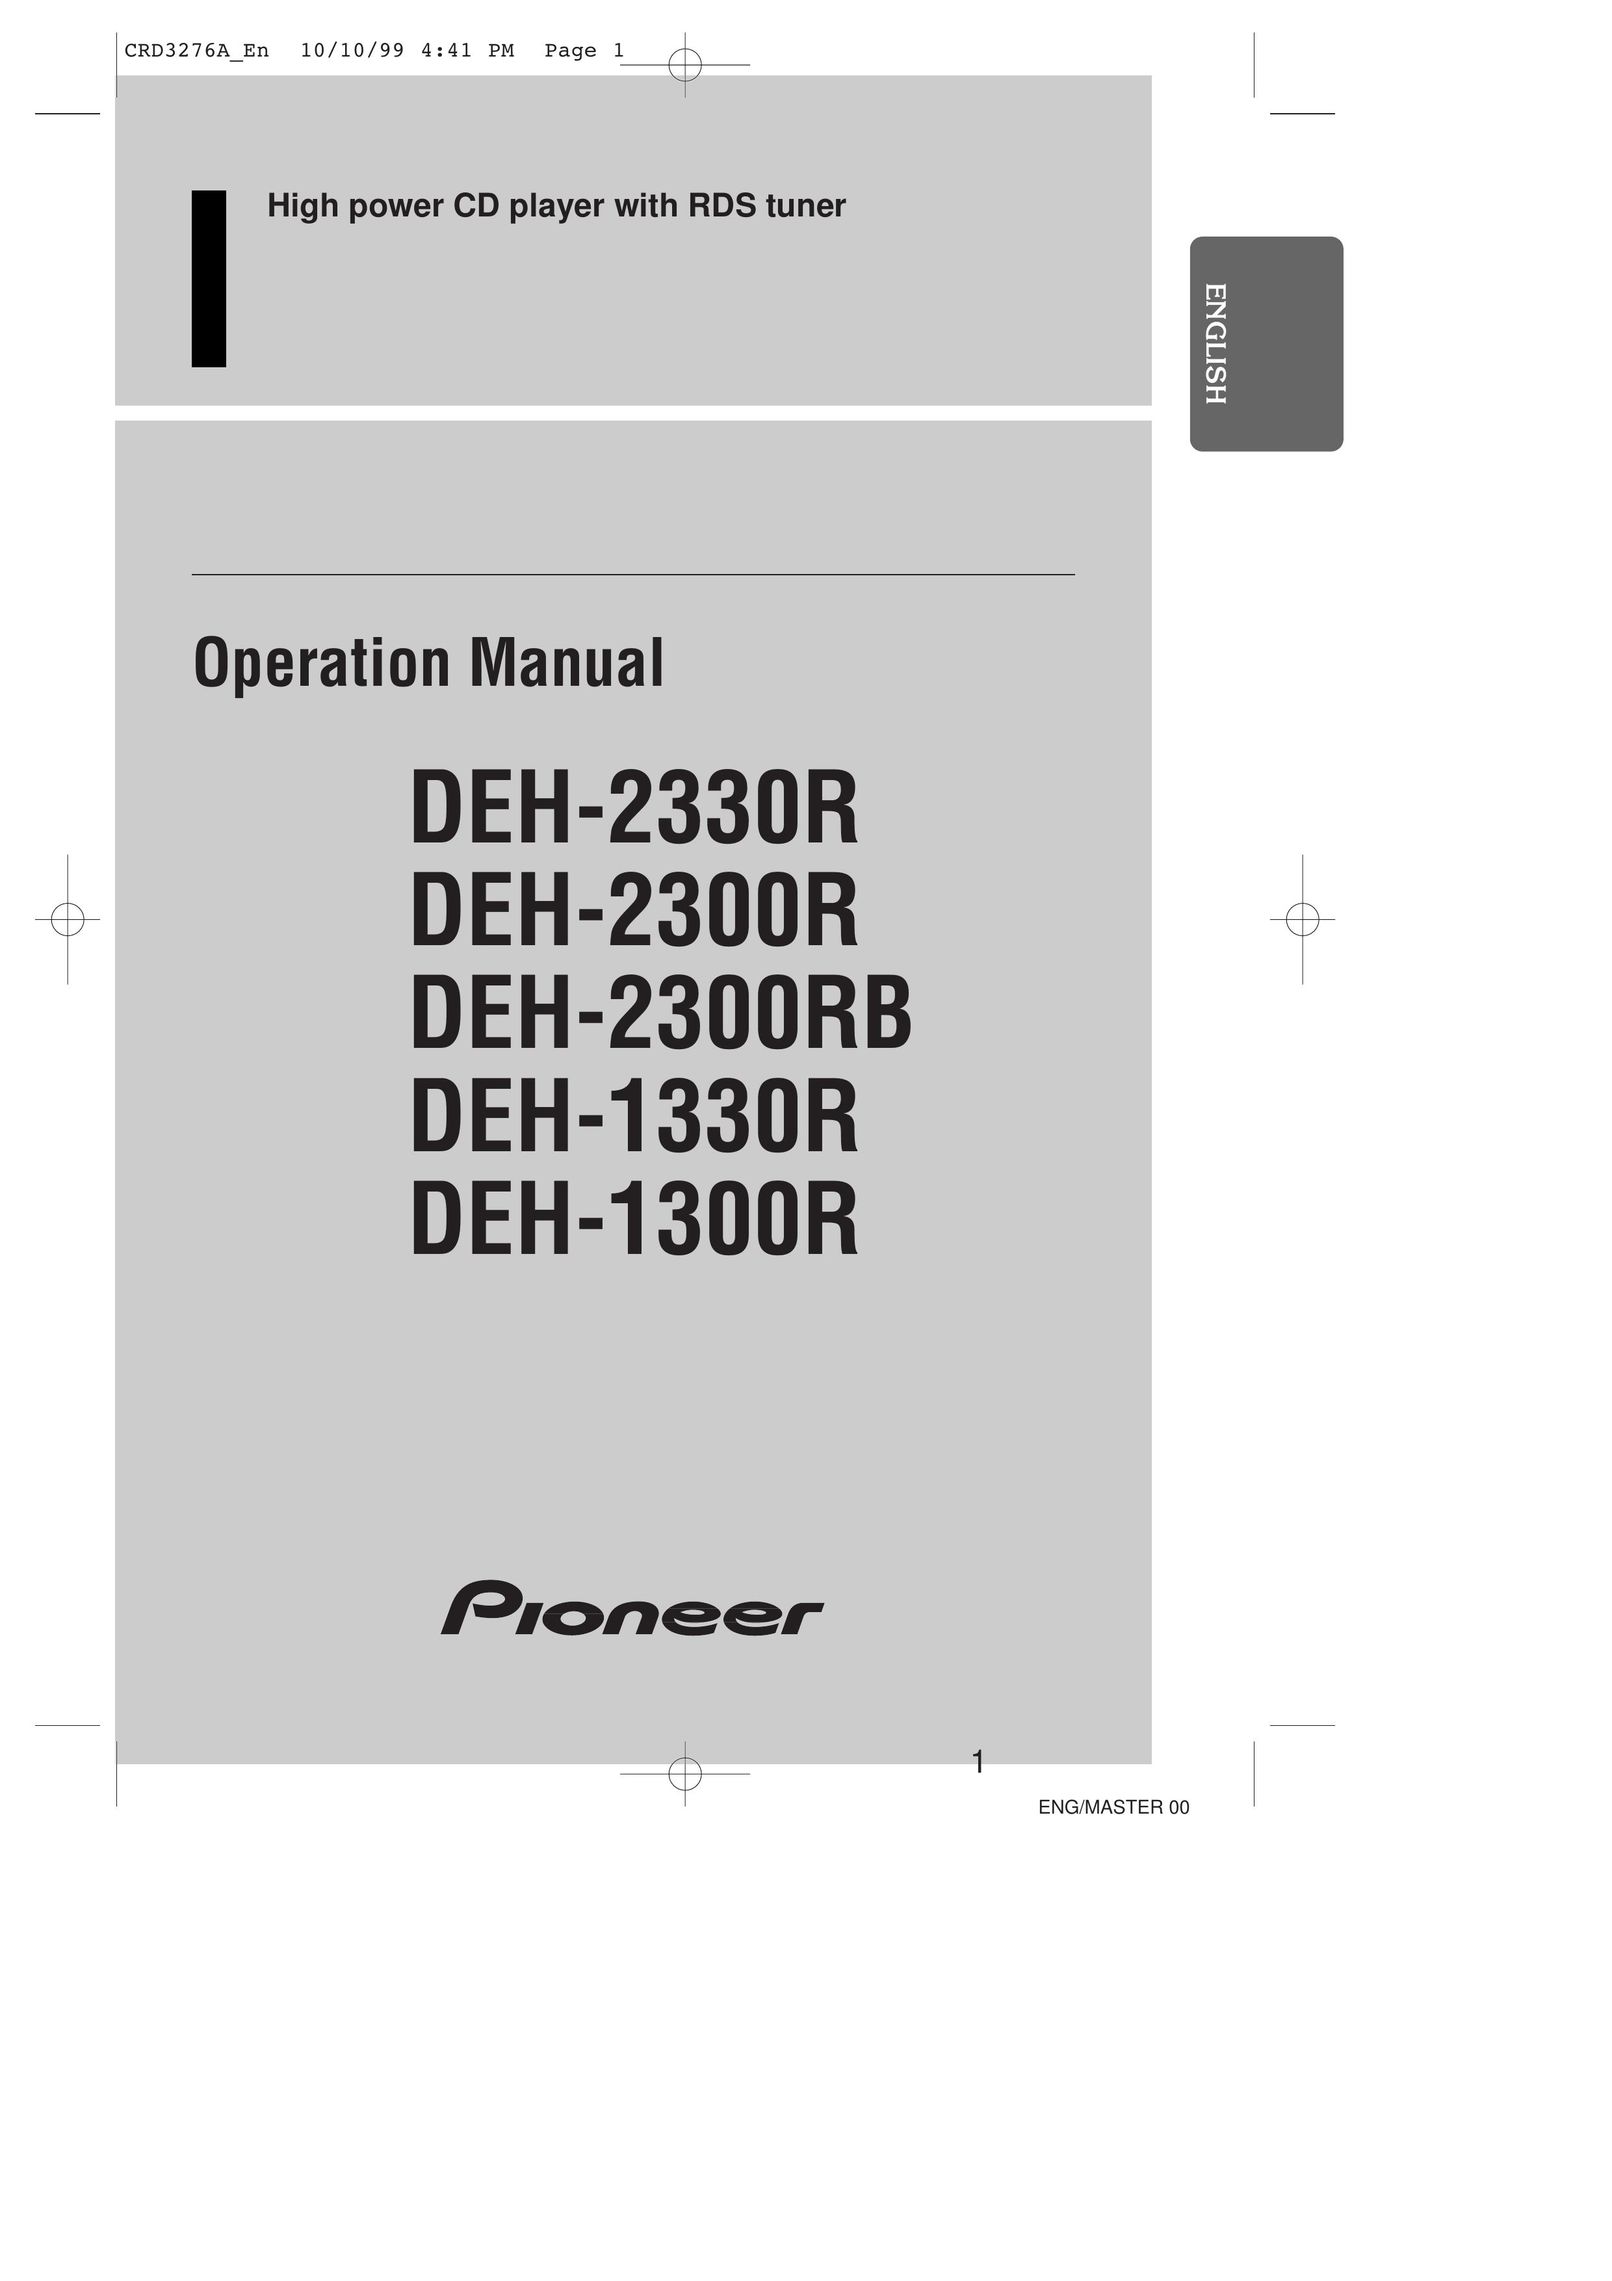 Pioneer DEH-1300R CD Player User Manual